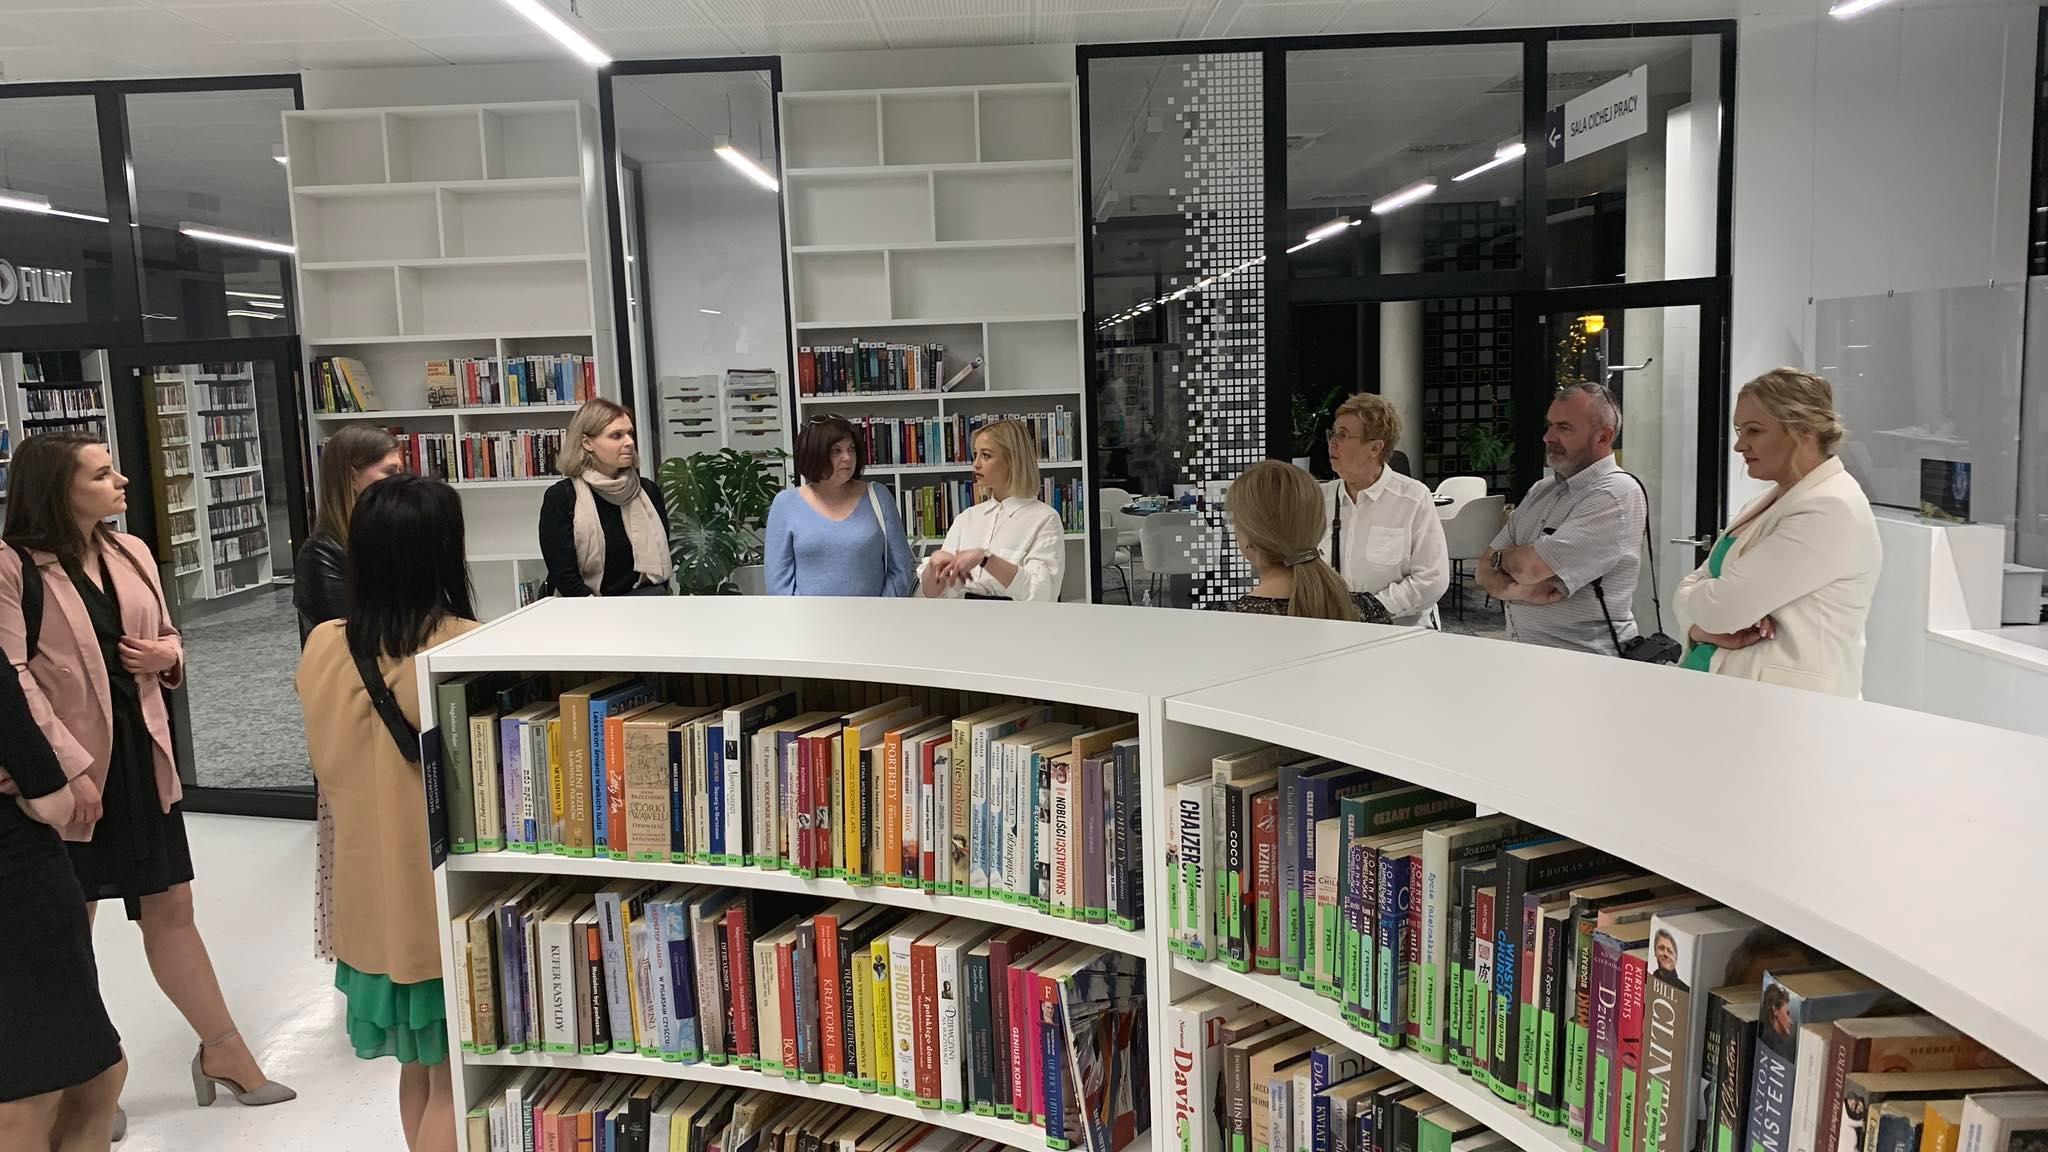 Prasminga radviliškiečių išvyka į Lenkiją – bibliotekininkai dalijosi patirtimi